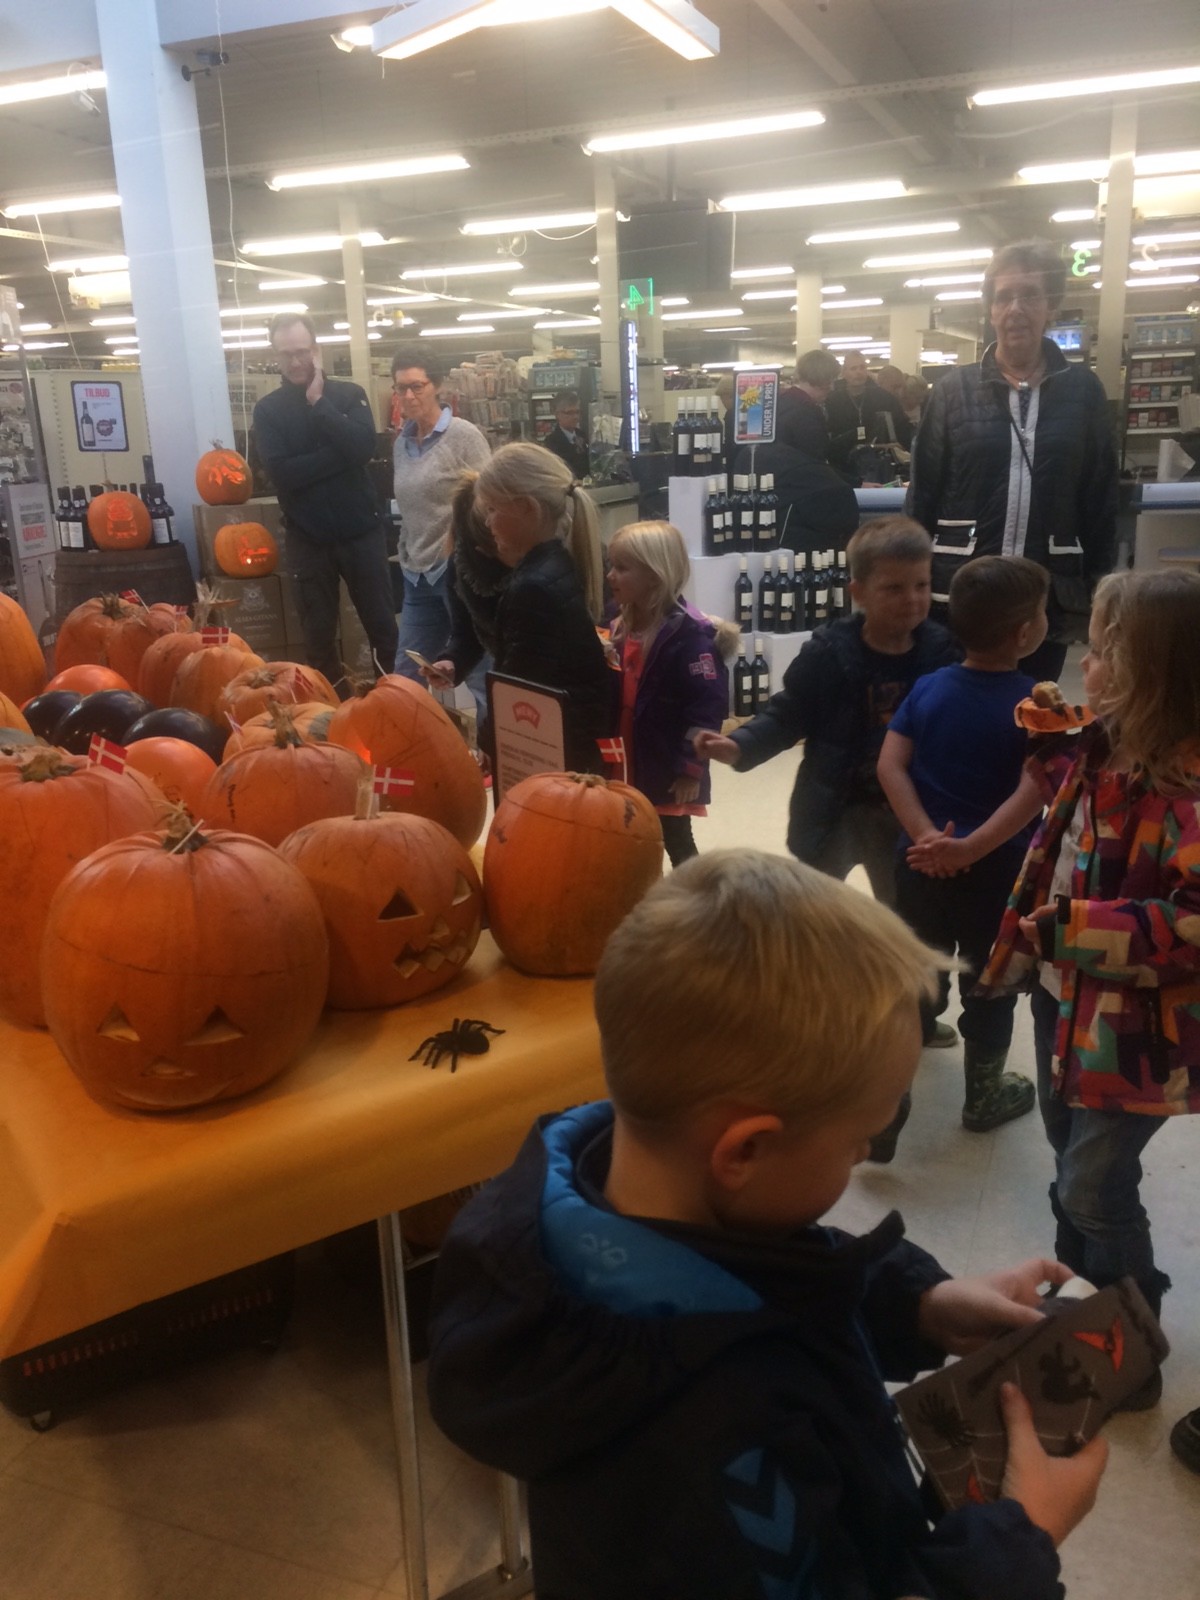 Græskarkonkurrence i forbindelse med Halloween blandt børnene i Meny, Kalundborg